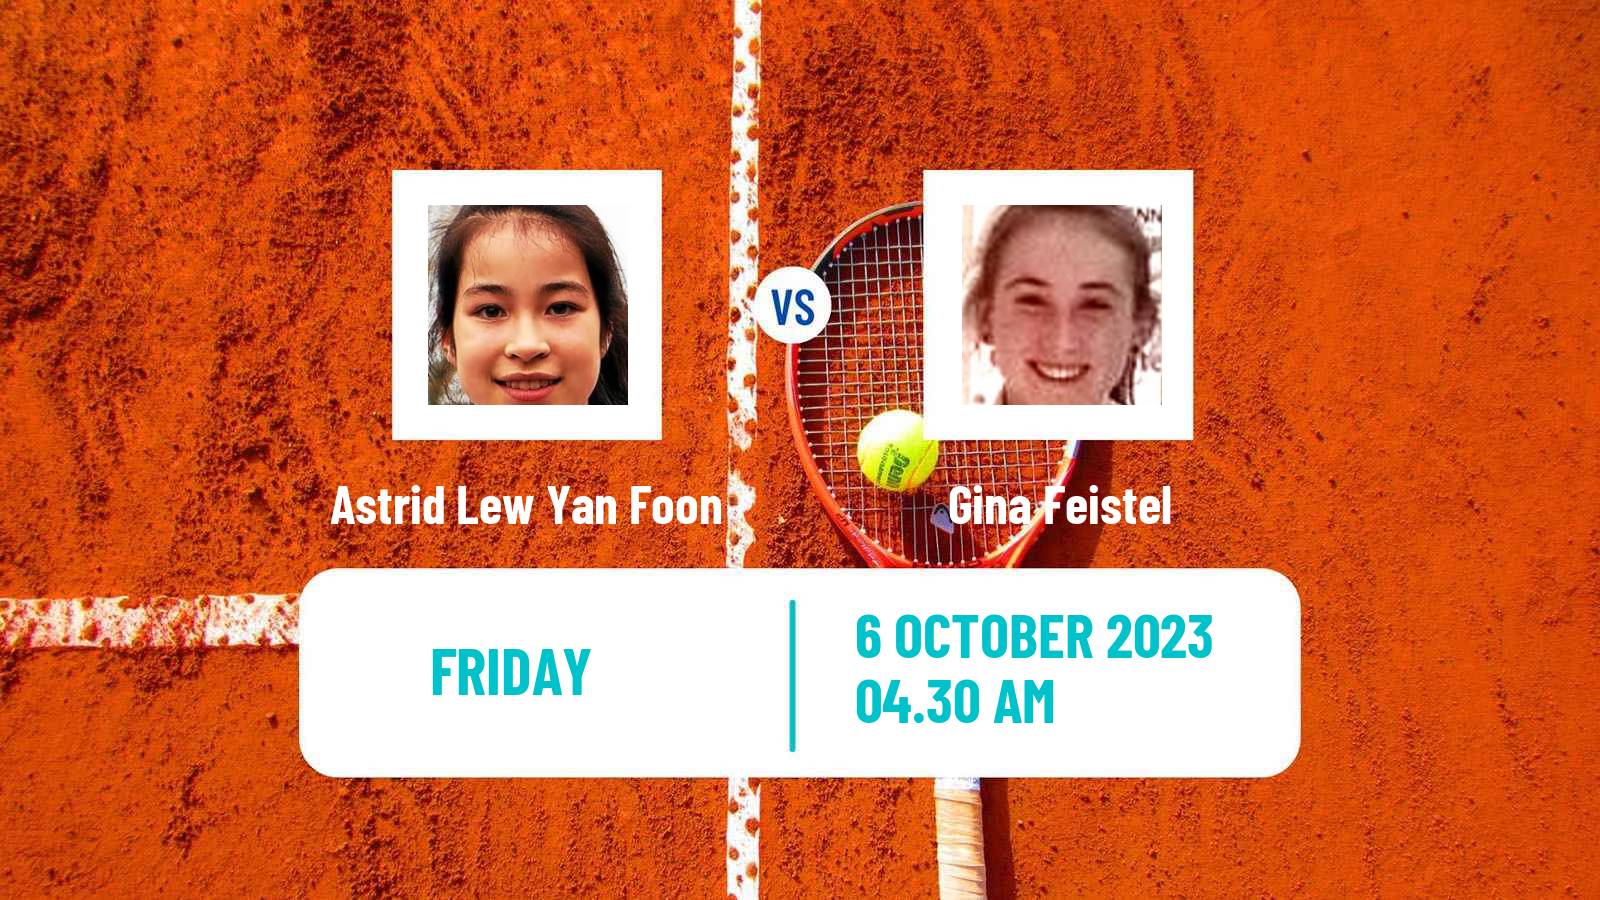 Tennis ITF W15 Monastir 35 Women Astrid Lew Yan Foon - Gina Feistel